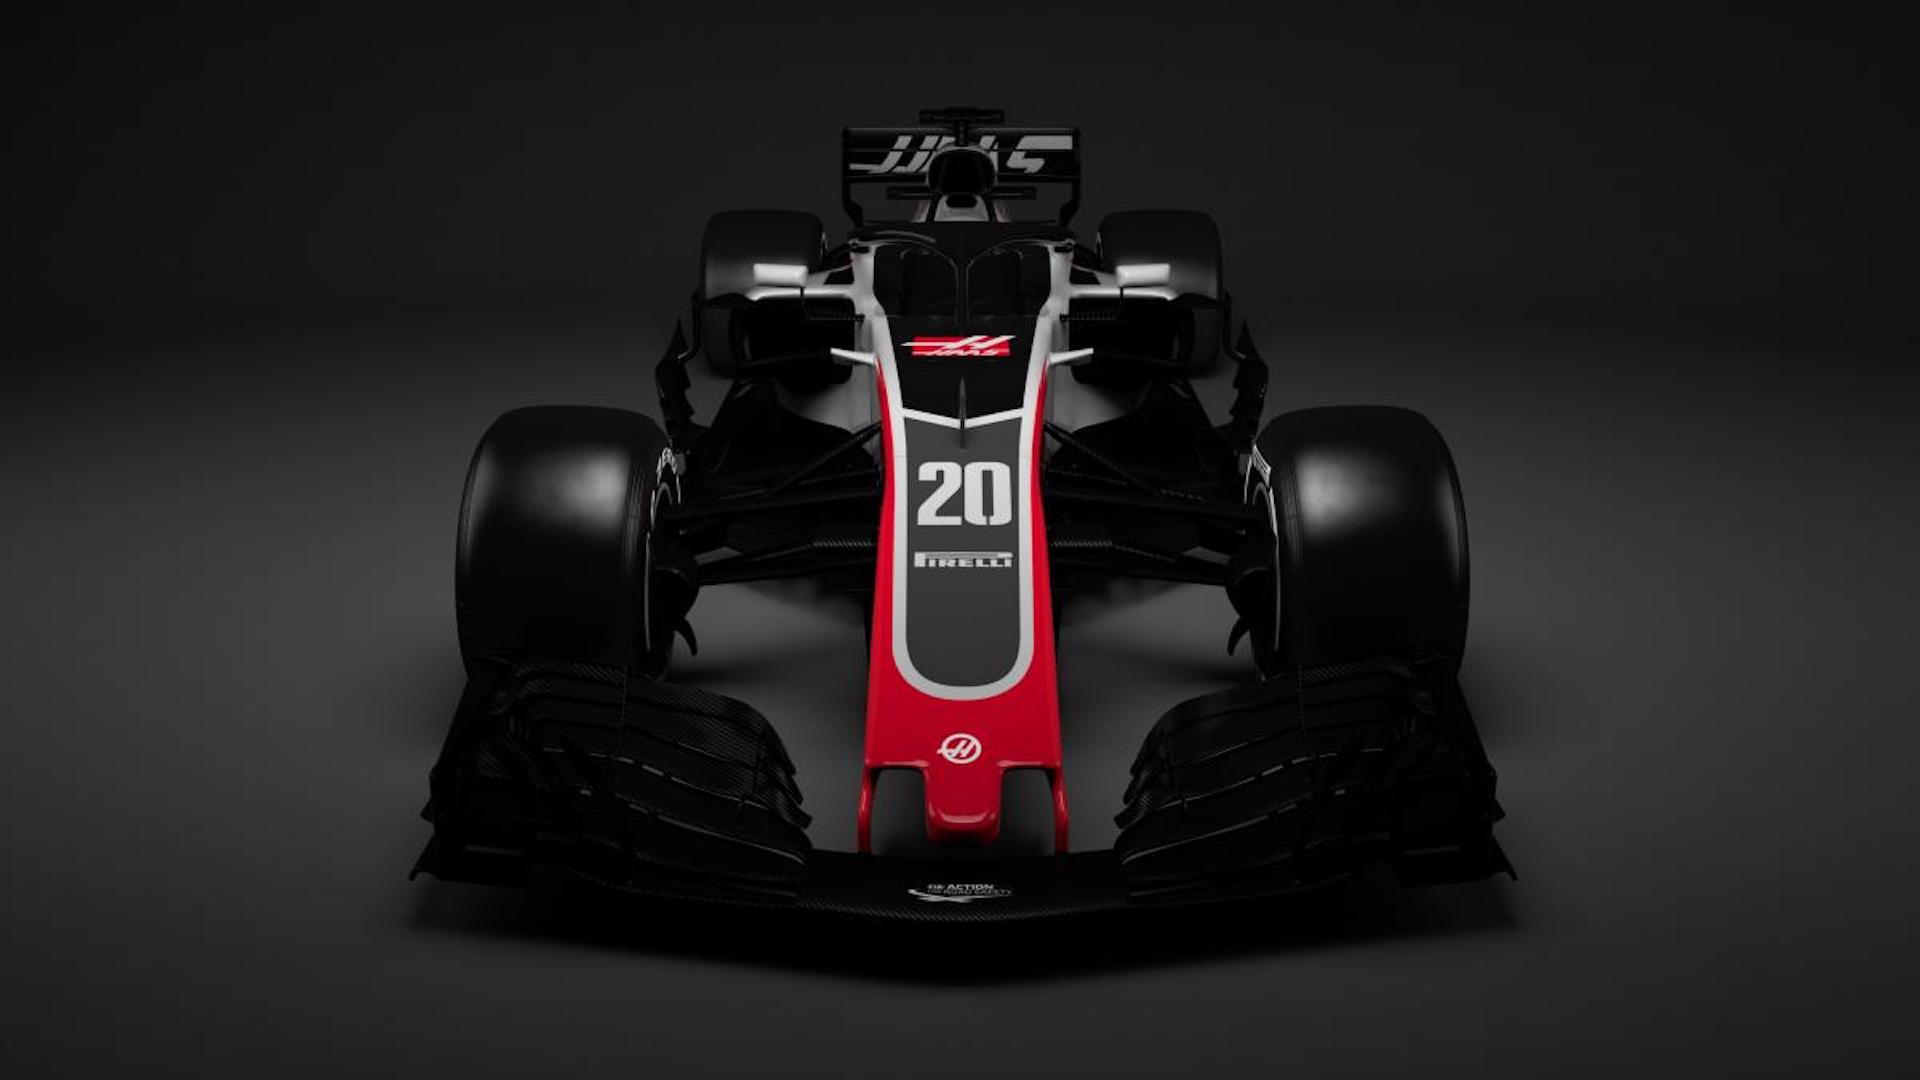 2018 Haas F1 race car